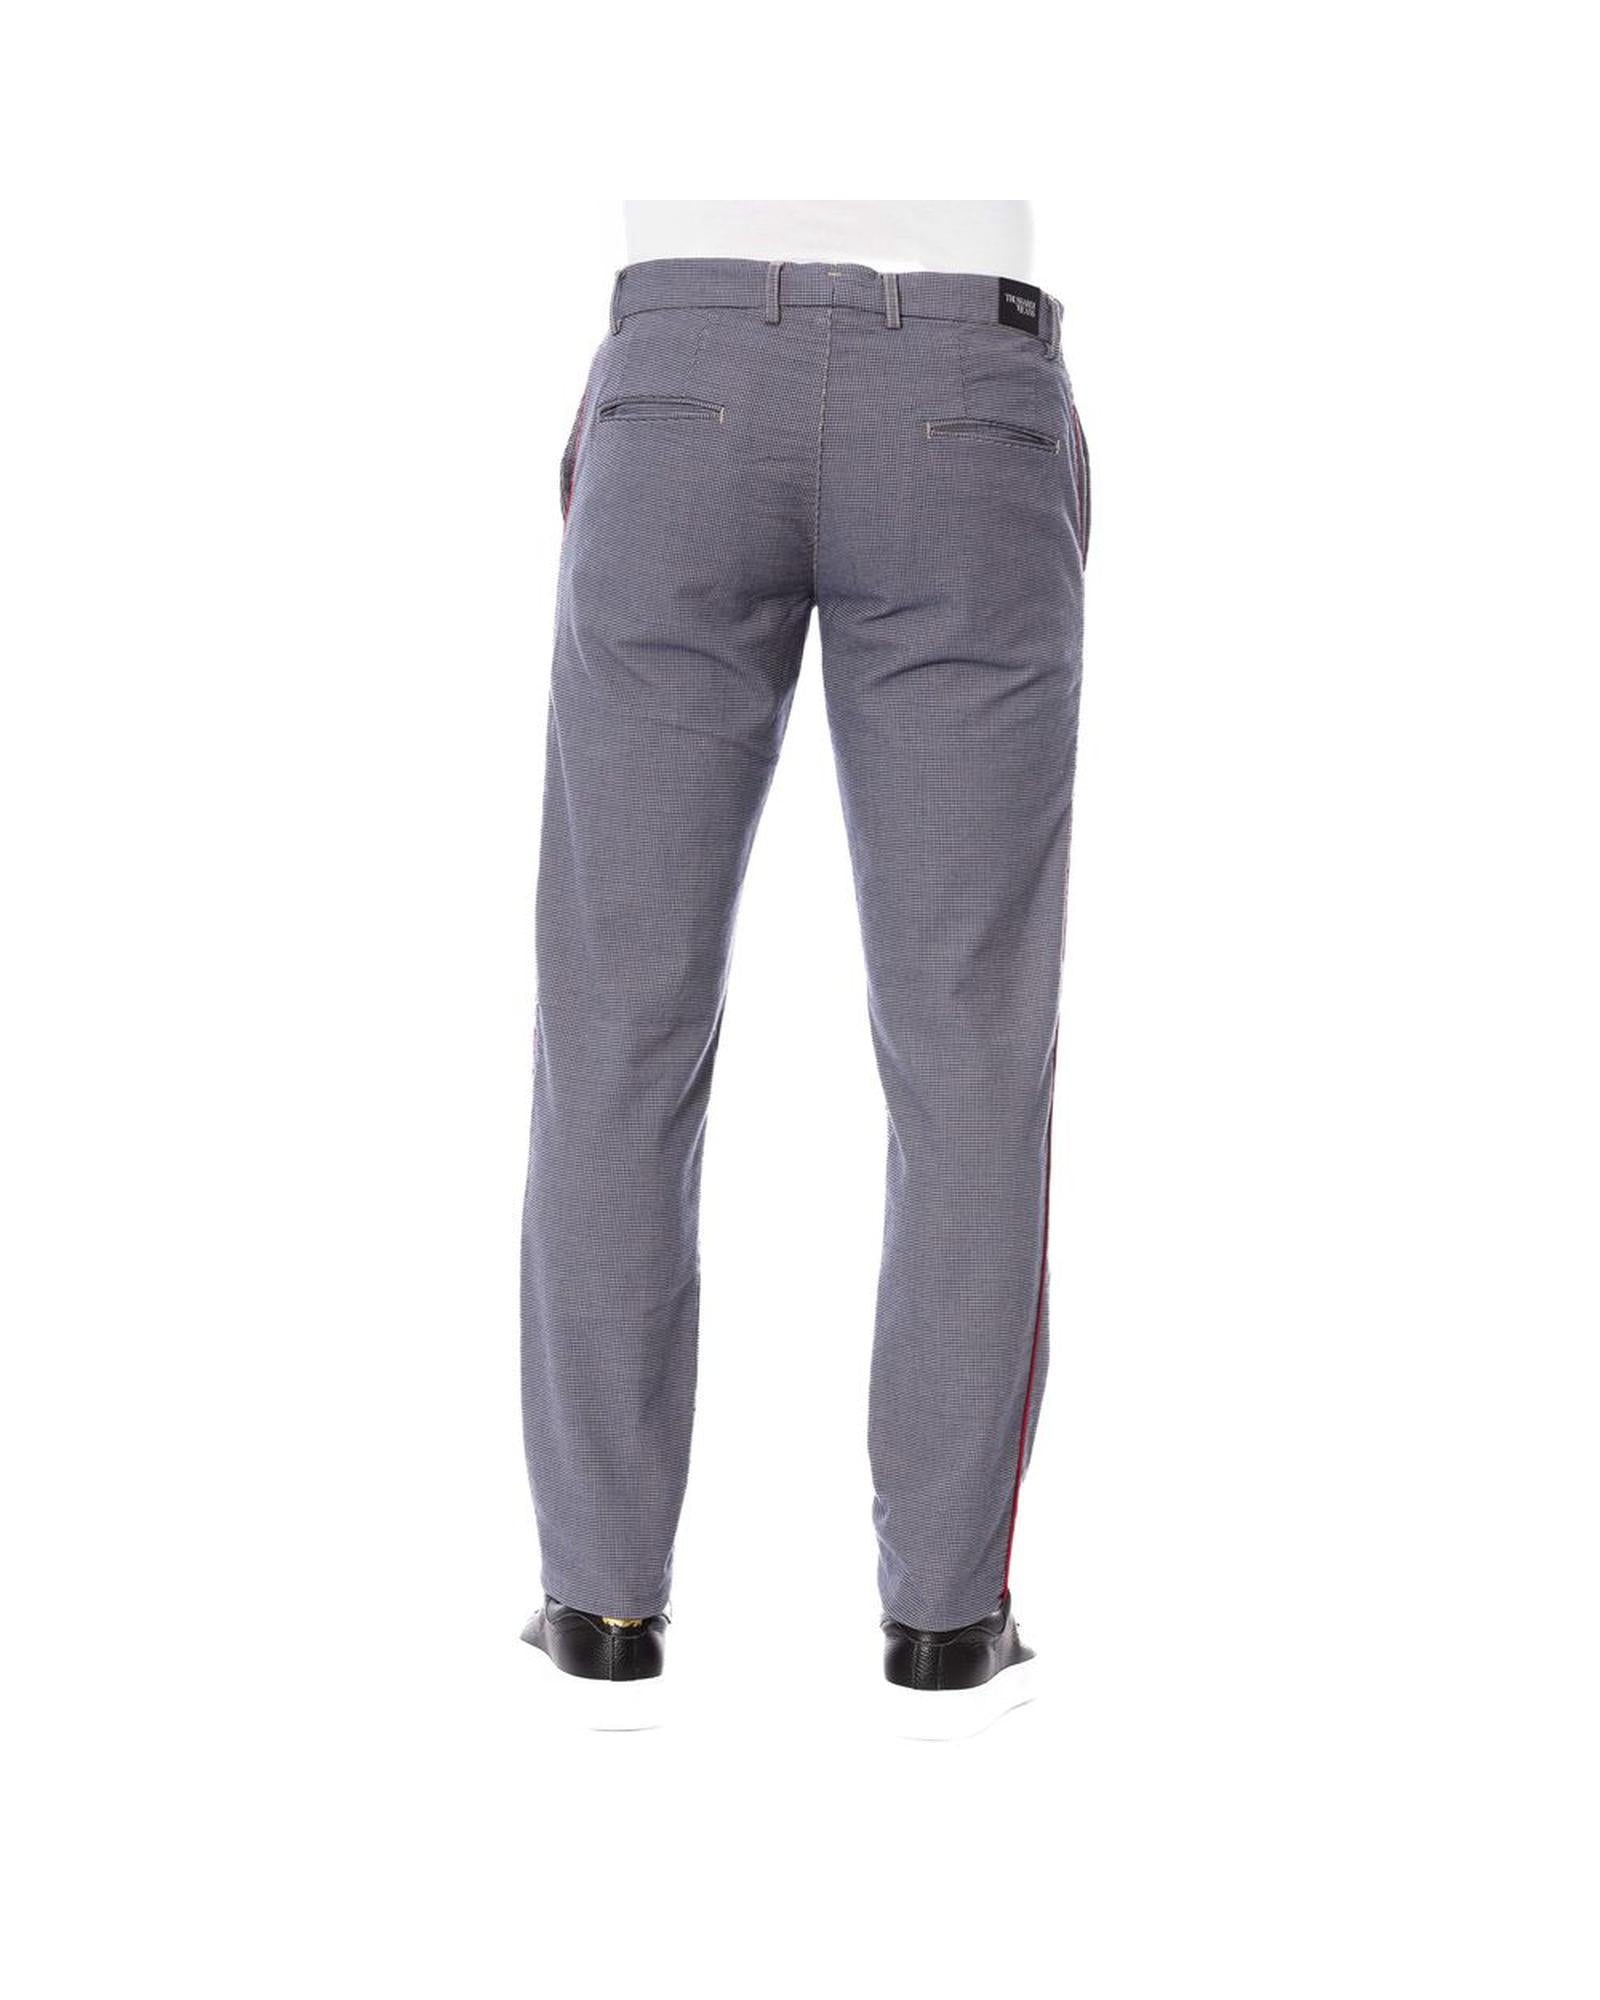 Men's Blue Cotton Jeans & Pant - W44 US